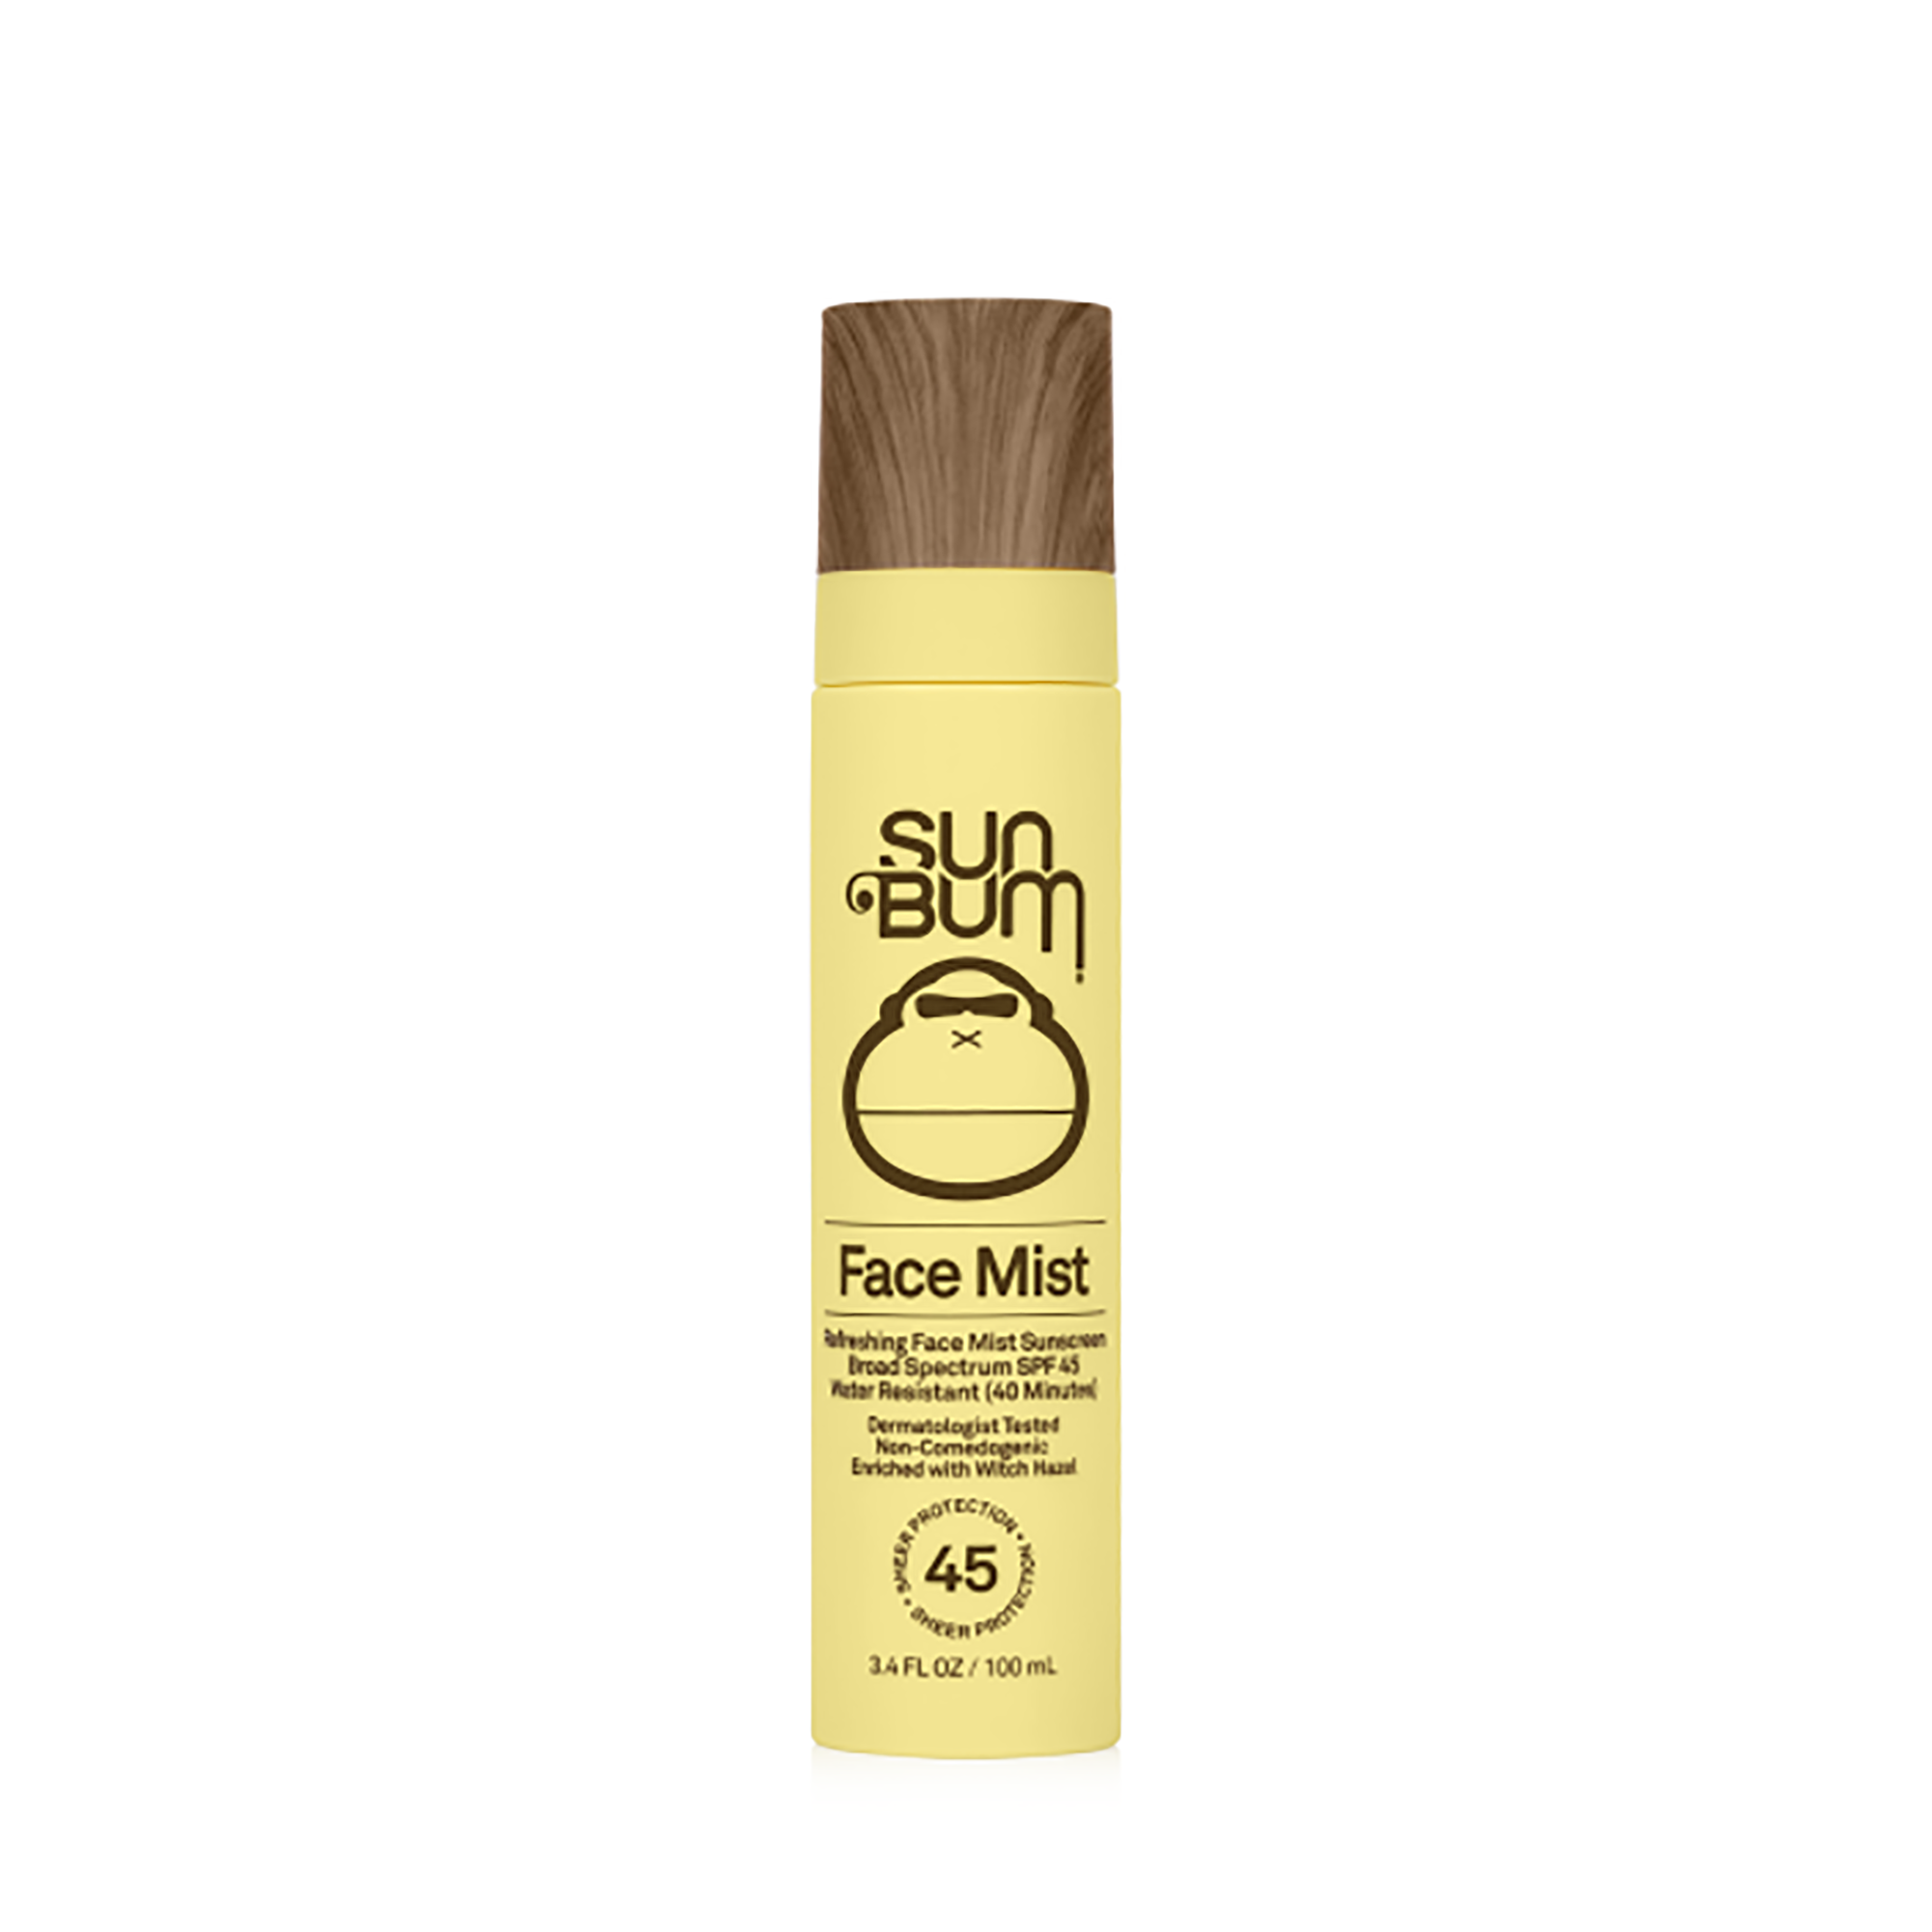 Sun Bum Original SPF 45 Sunscreen Face Mist / 3.4OZ